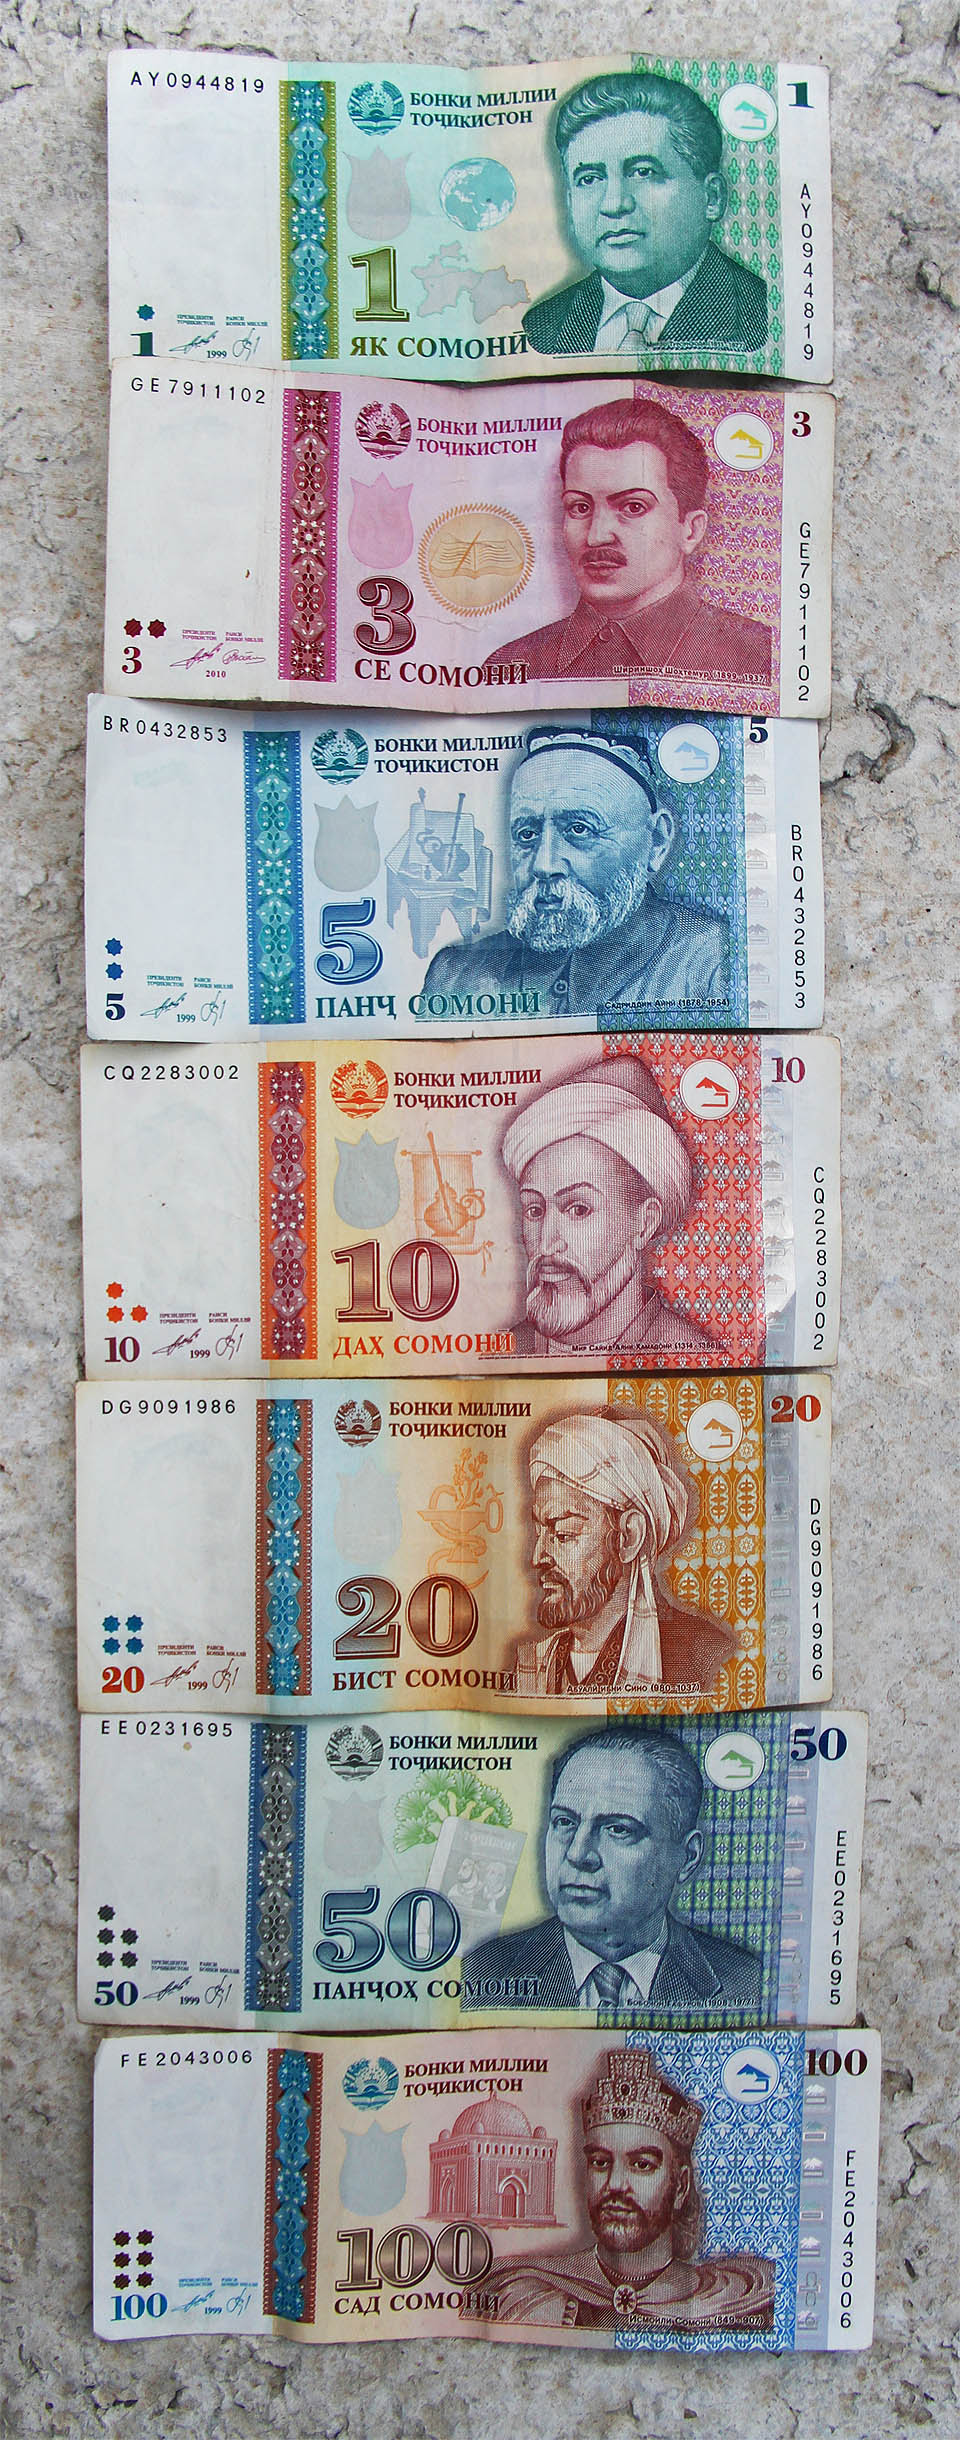 Tádžické bankovky jsou nejen hezké, ale také zajímavé existenci trojsomonovky.